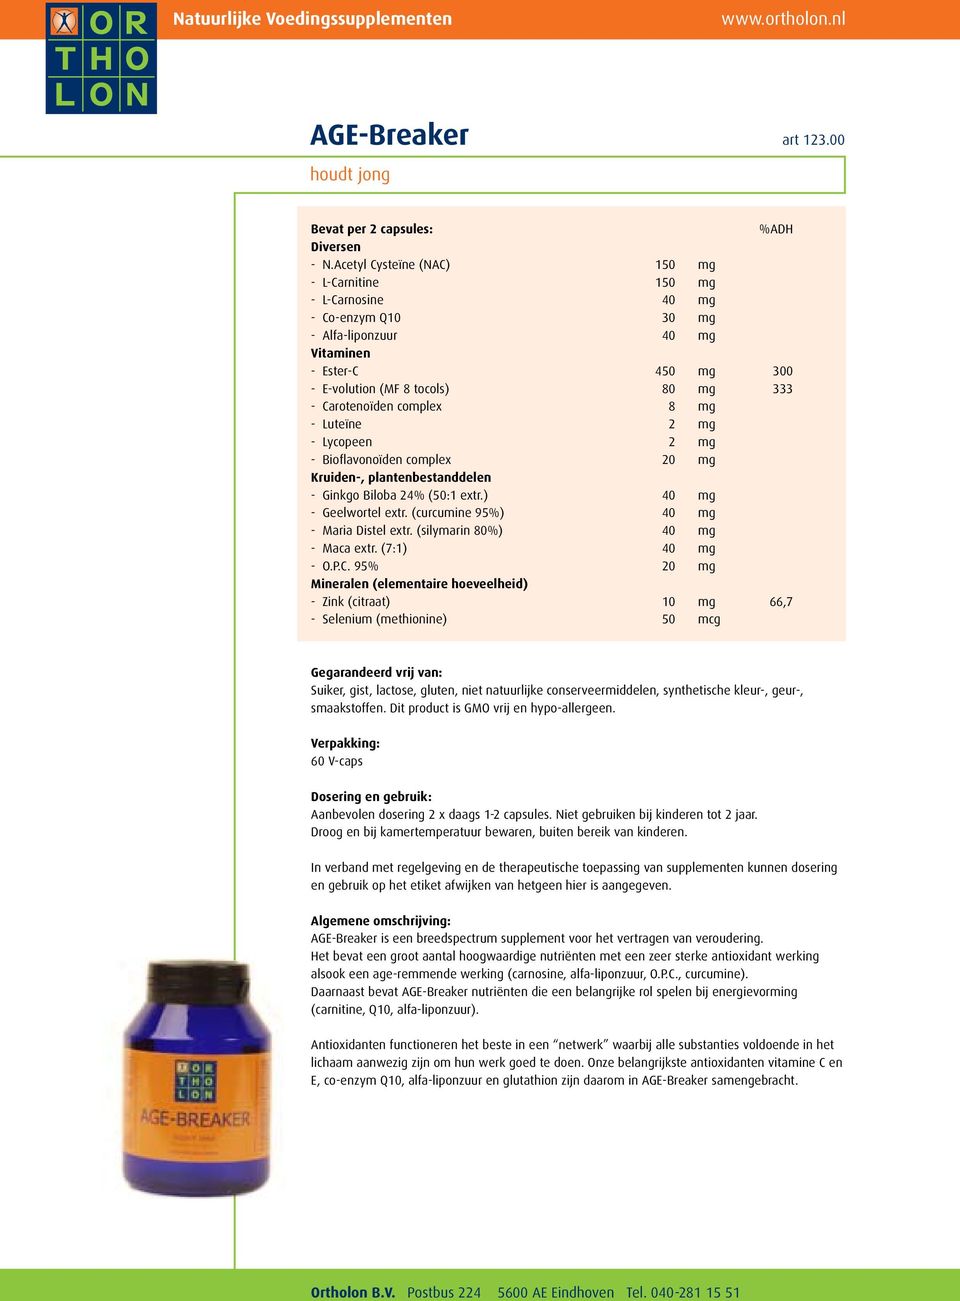 complex 8 mg - Luteïne 2 mg - Lycopeen 2 mg - Bioflavonoïden complex 20 mg Kruiden-, plantenbestanddelen - Ginkgo Biloba 24% (50:1 extr.) 40 mg - Geelwortel extr.